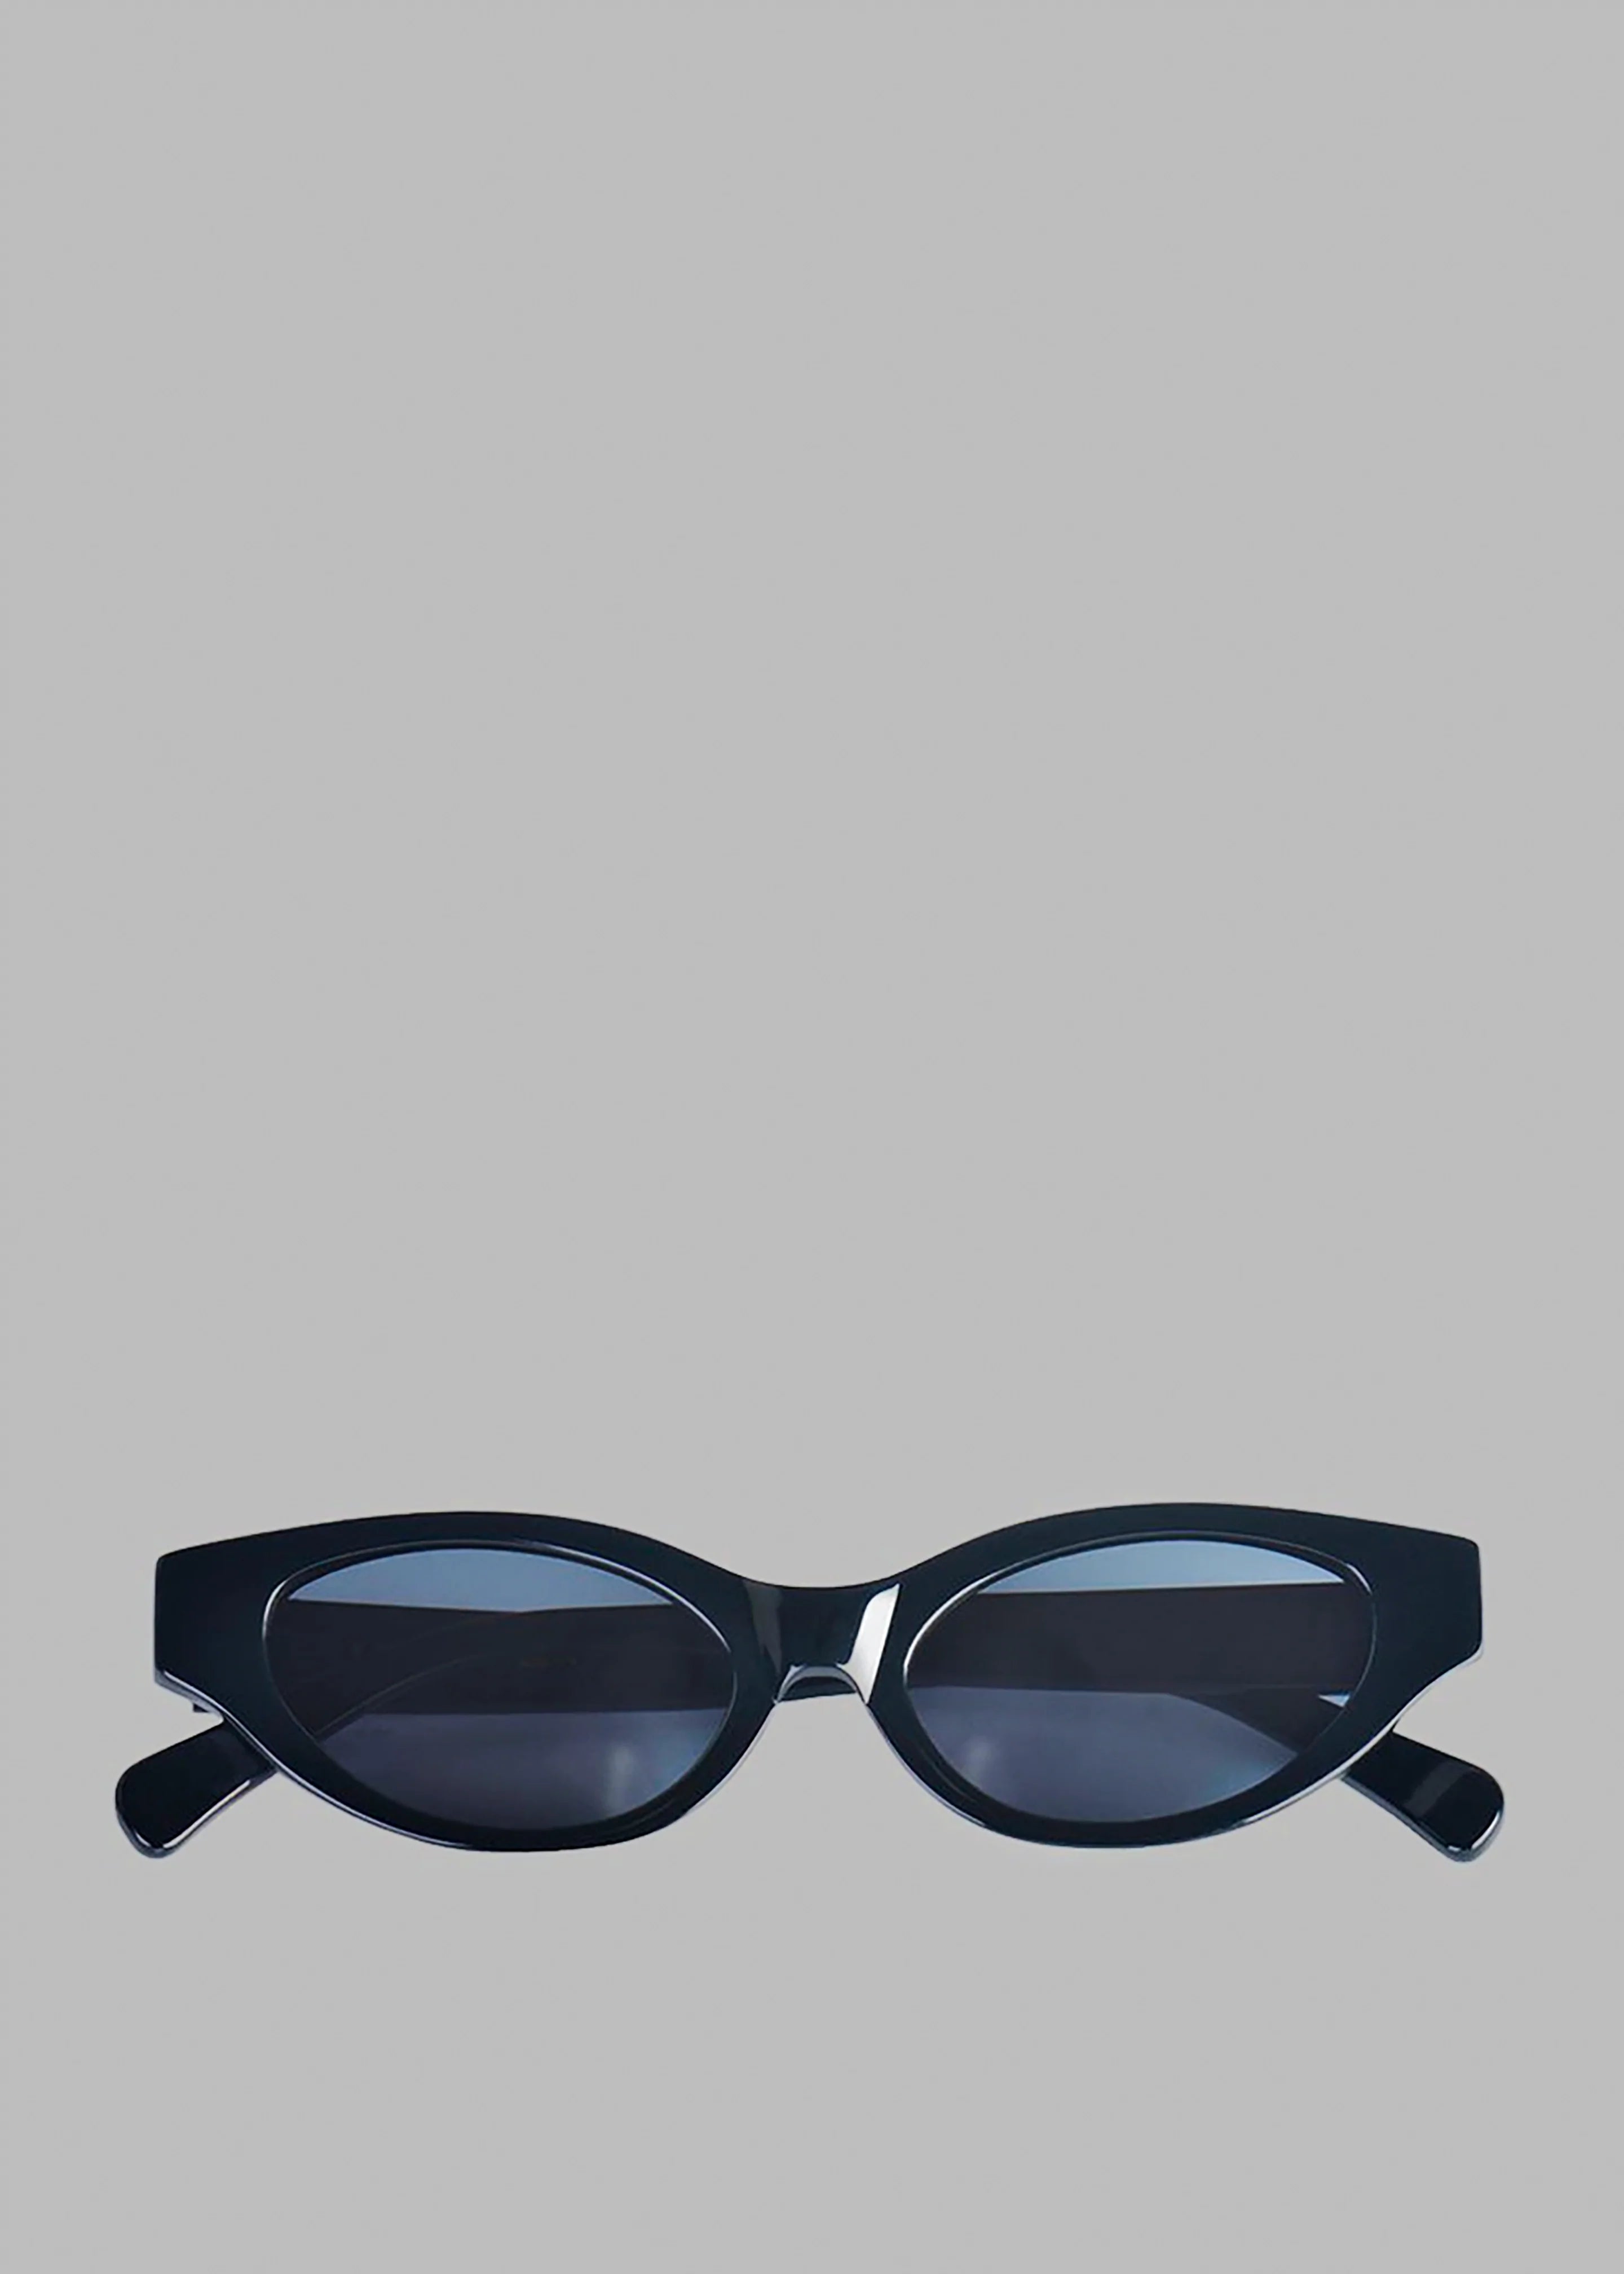 Karen Wazen Glamorous Sunglasses - Black - 2